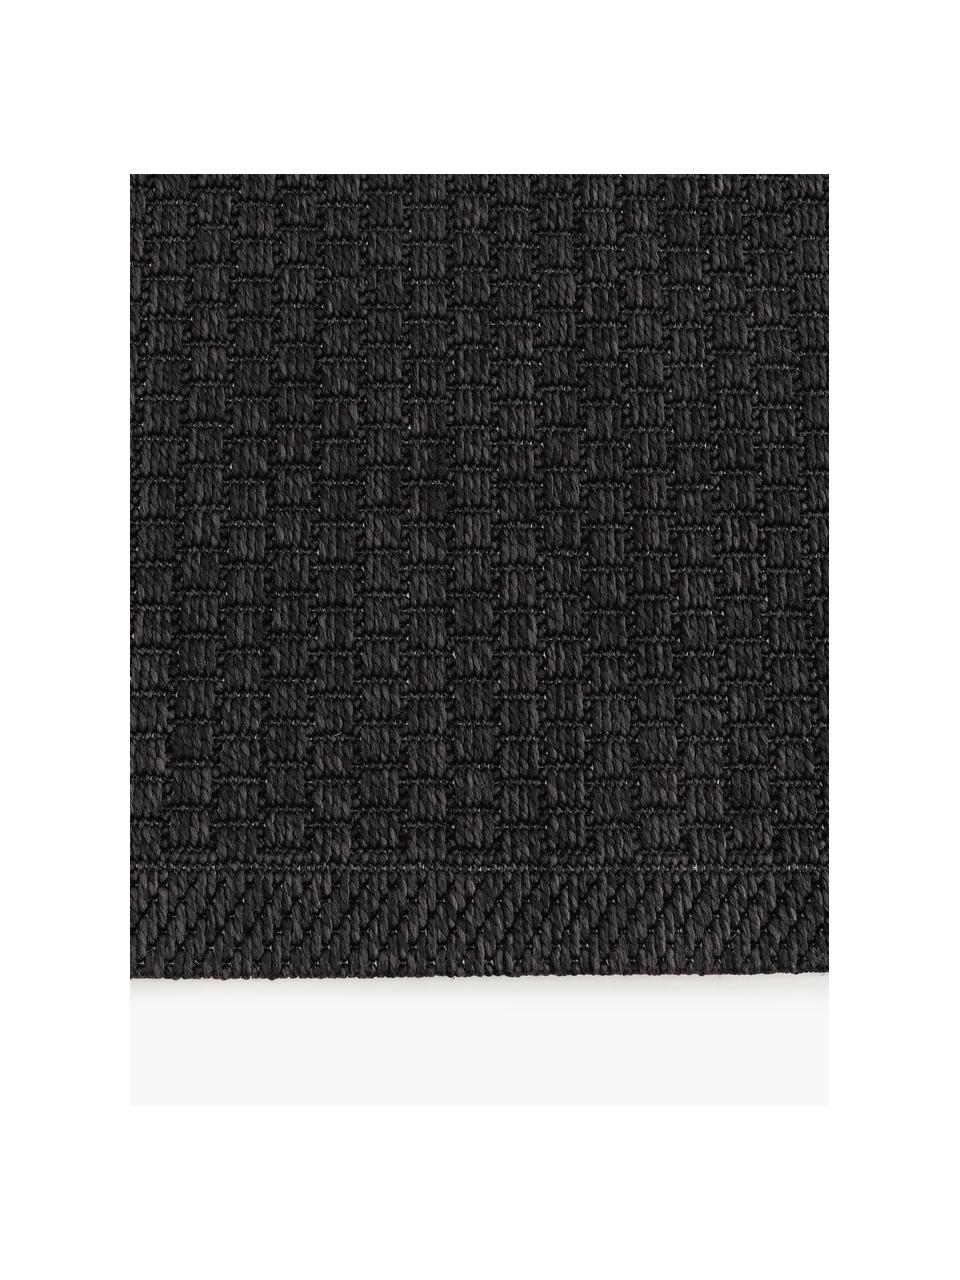 Interiérový/exteriérový koberec Toronto, 100 % polypropylen, Antracitová, Š 120 cm, D 180 cm (velikost S)